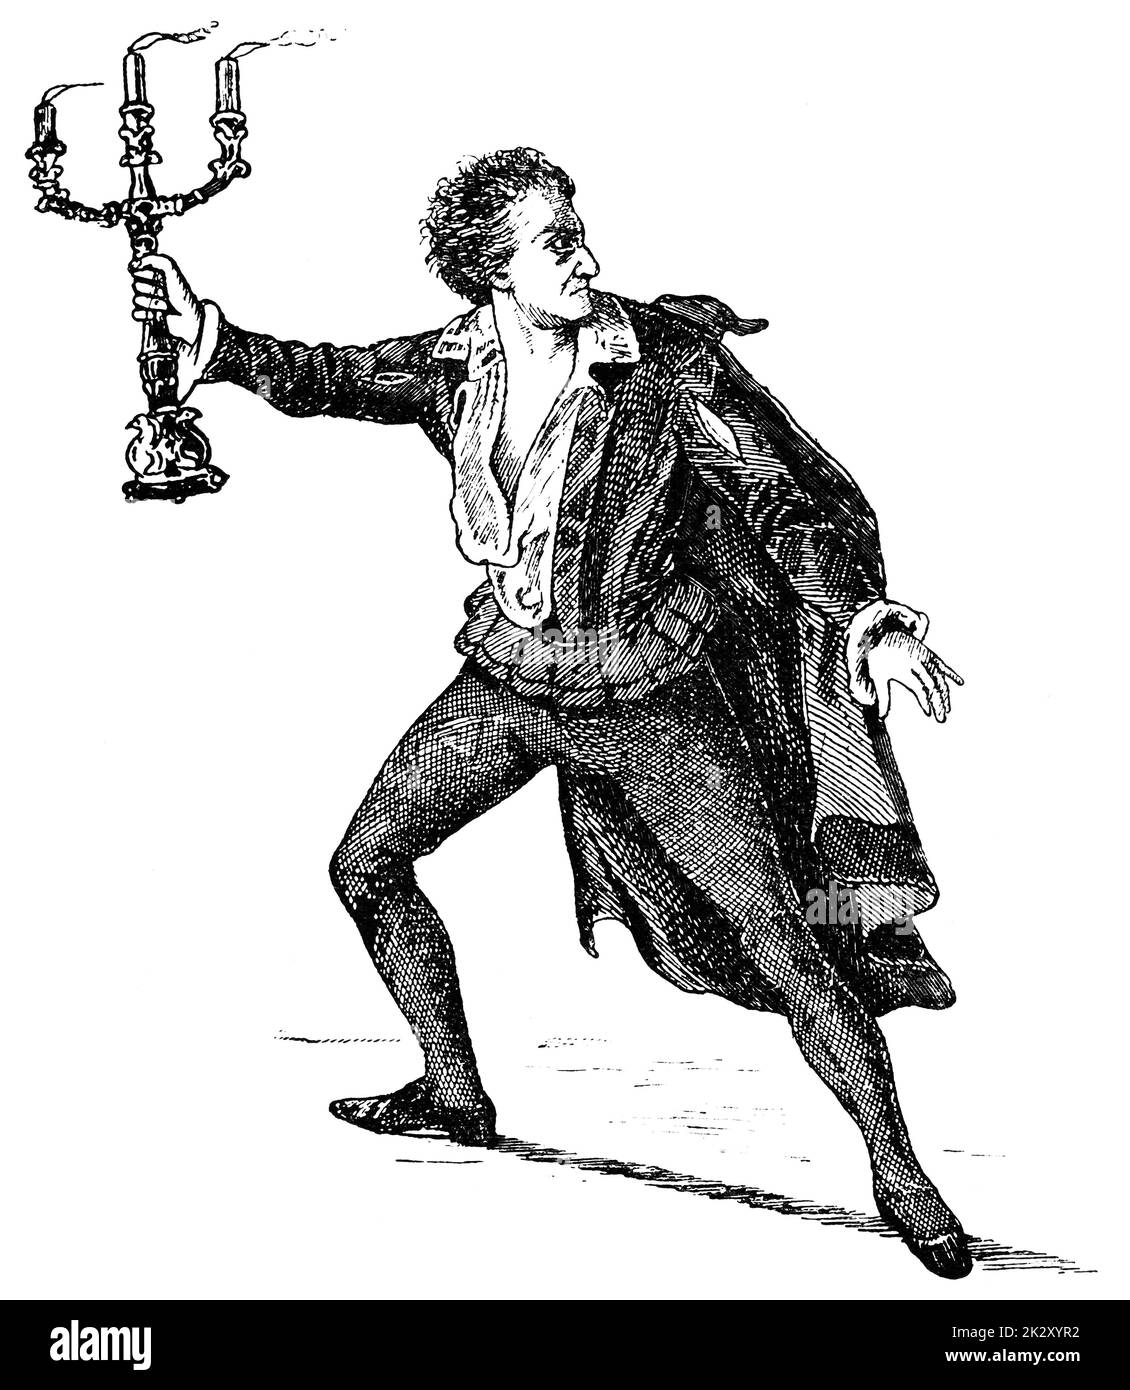 Ritratto di Theodor Doering come Franz Moor nel dramma 'The Robbers' di Friedrich Schiller. Theodor Doering - un attore tedesco. Illustrazione del 19 ° secolo. Sfondo bianco. Foto Stock